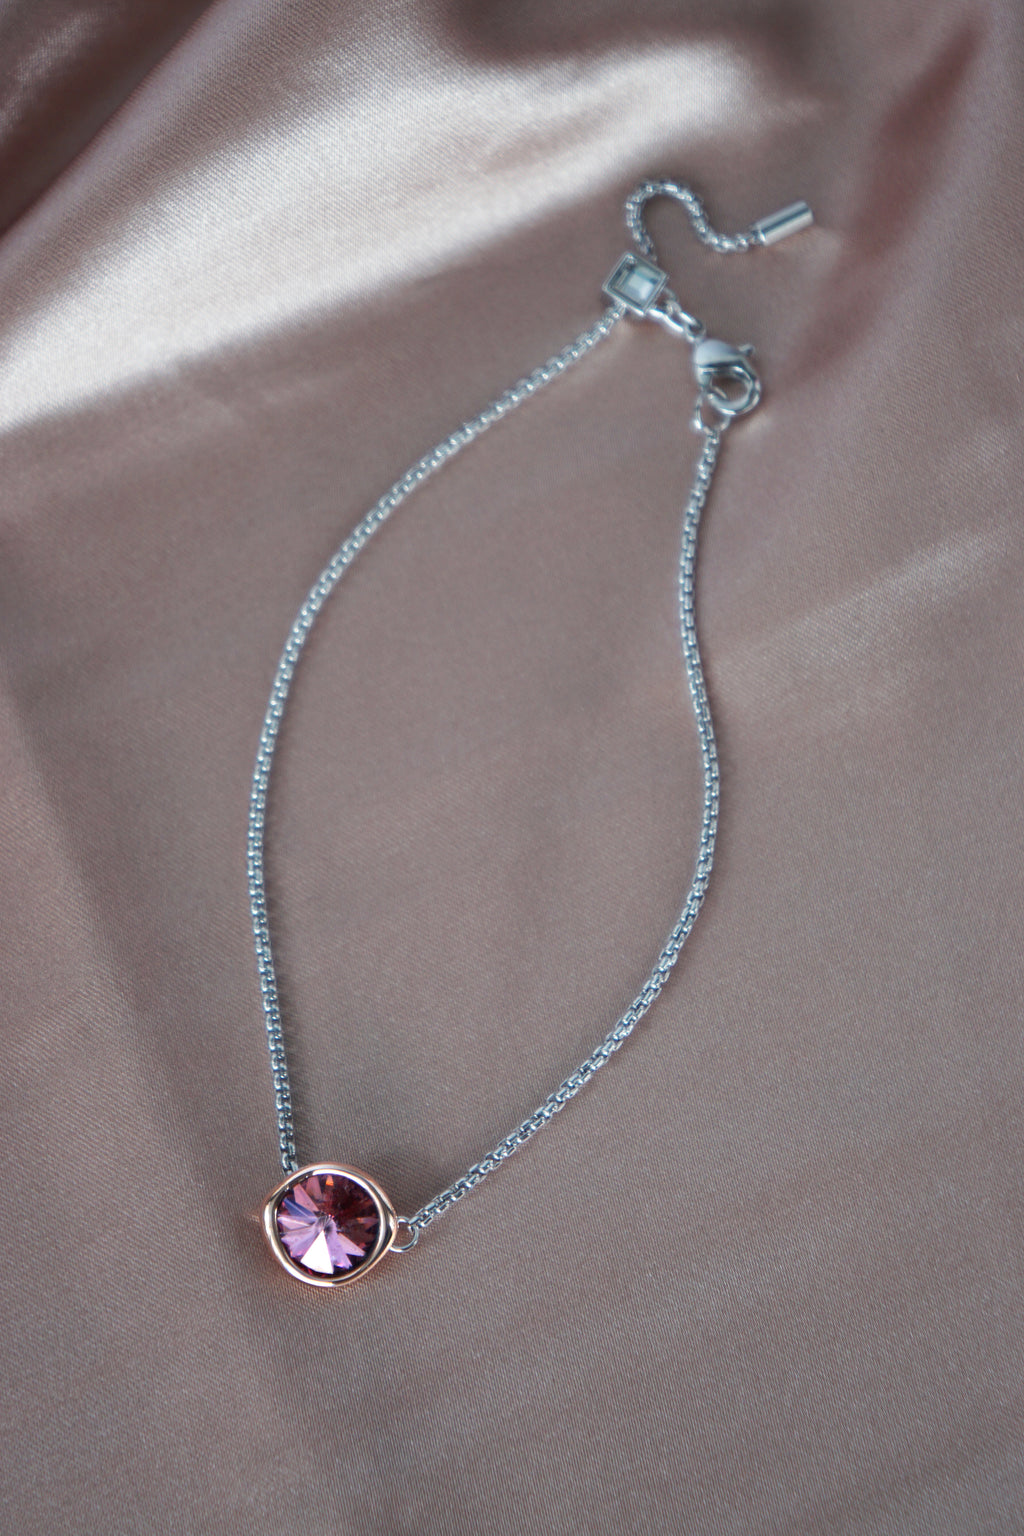 Rivière Bracelet in Silver/Rose Gold - Antique Pink